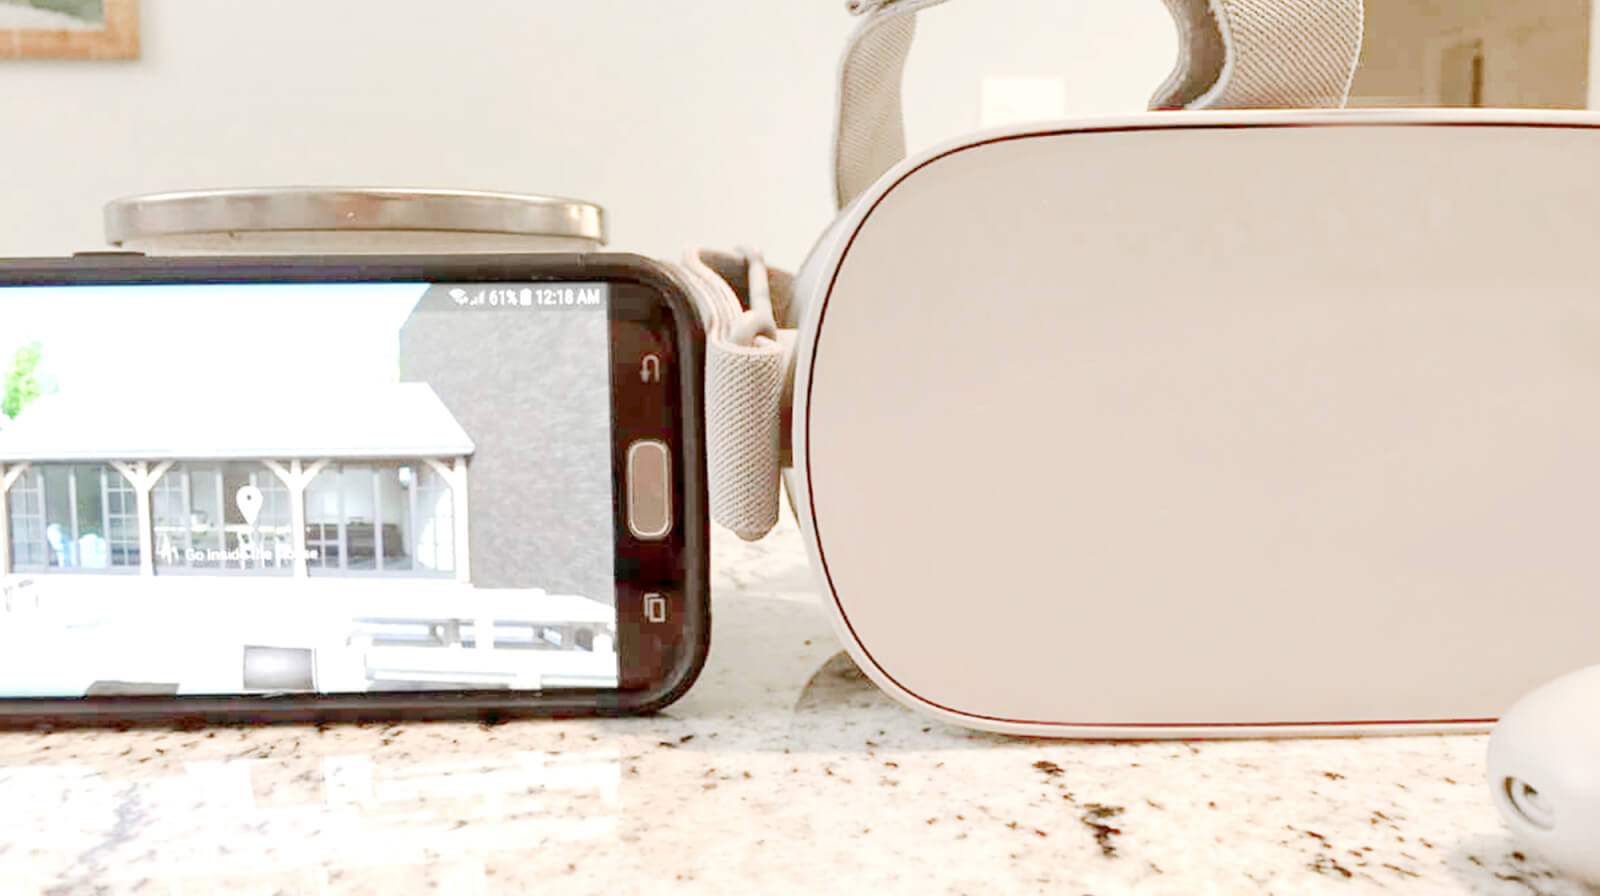 mirror iphone to oculus go